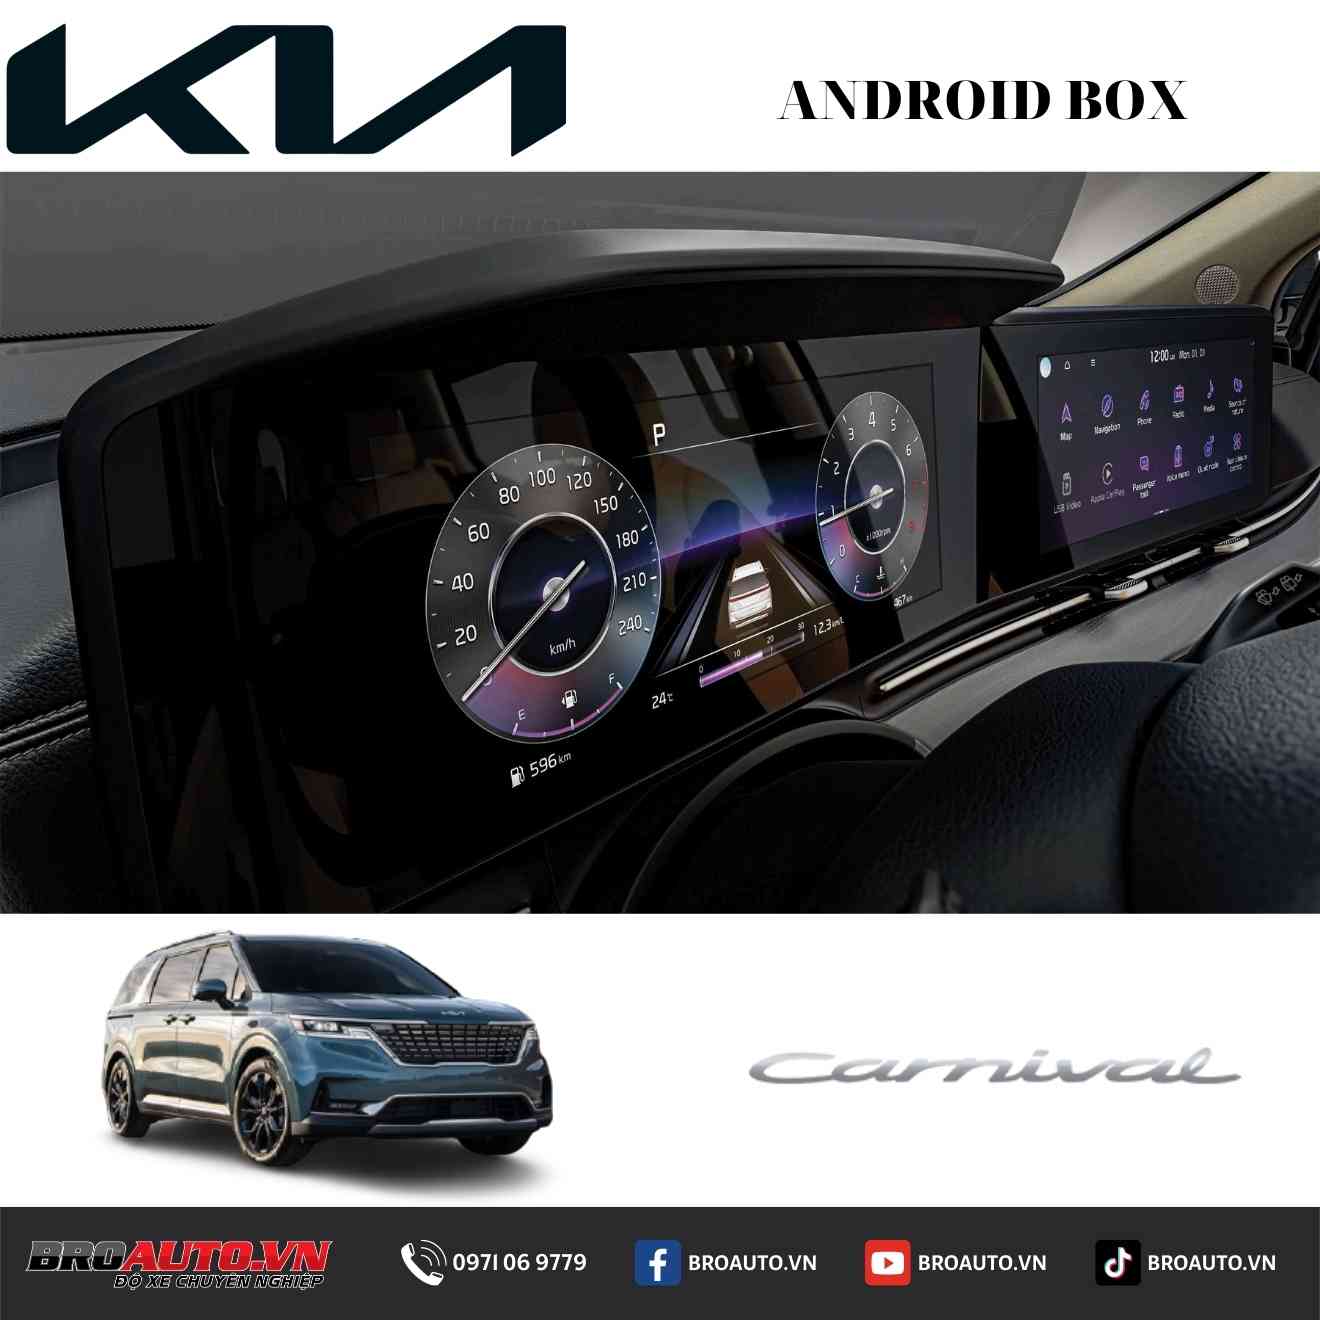 Độ phụ kiện Android box cho xe Kia Carnival